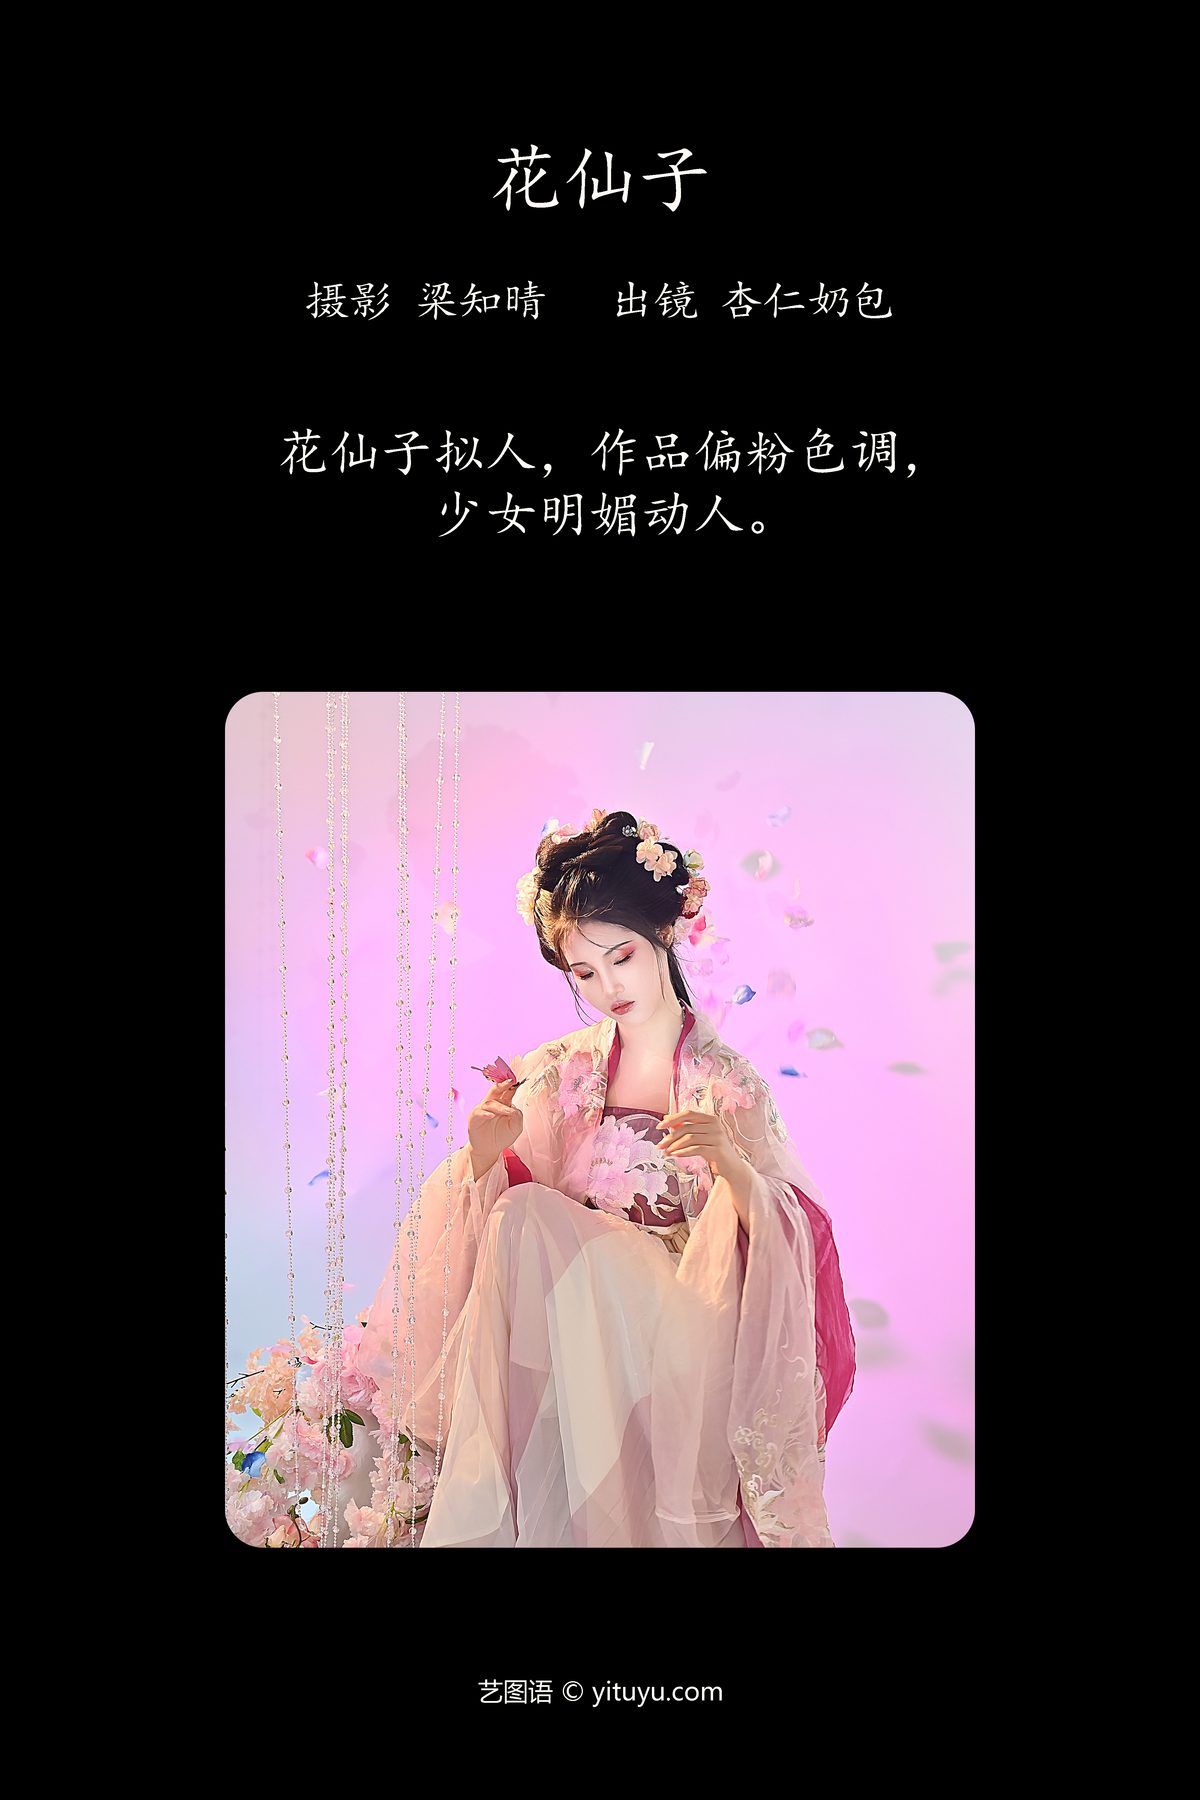 YiTuYu艺图语 Vol 4385 Xing Ren Nai Bao 0001 1205821768.jpg